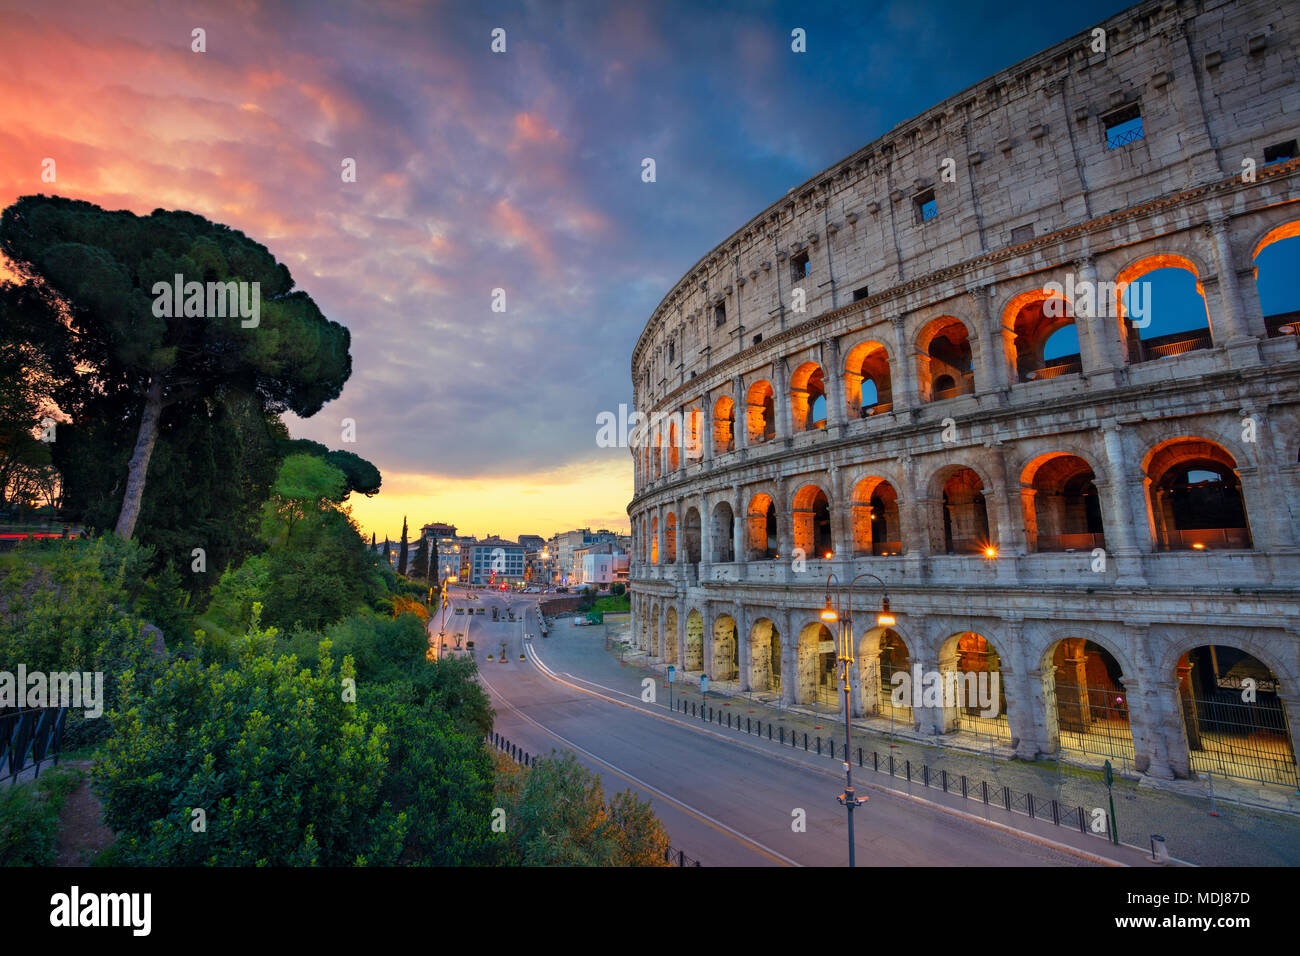 Coliseo. Imagen del Coliseo en Roma, Italia, durante bellos amaneceres. Foto de stock